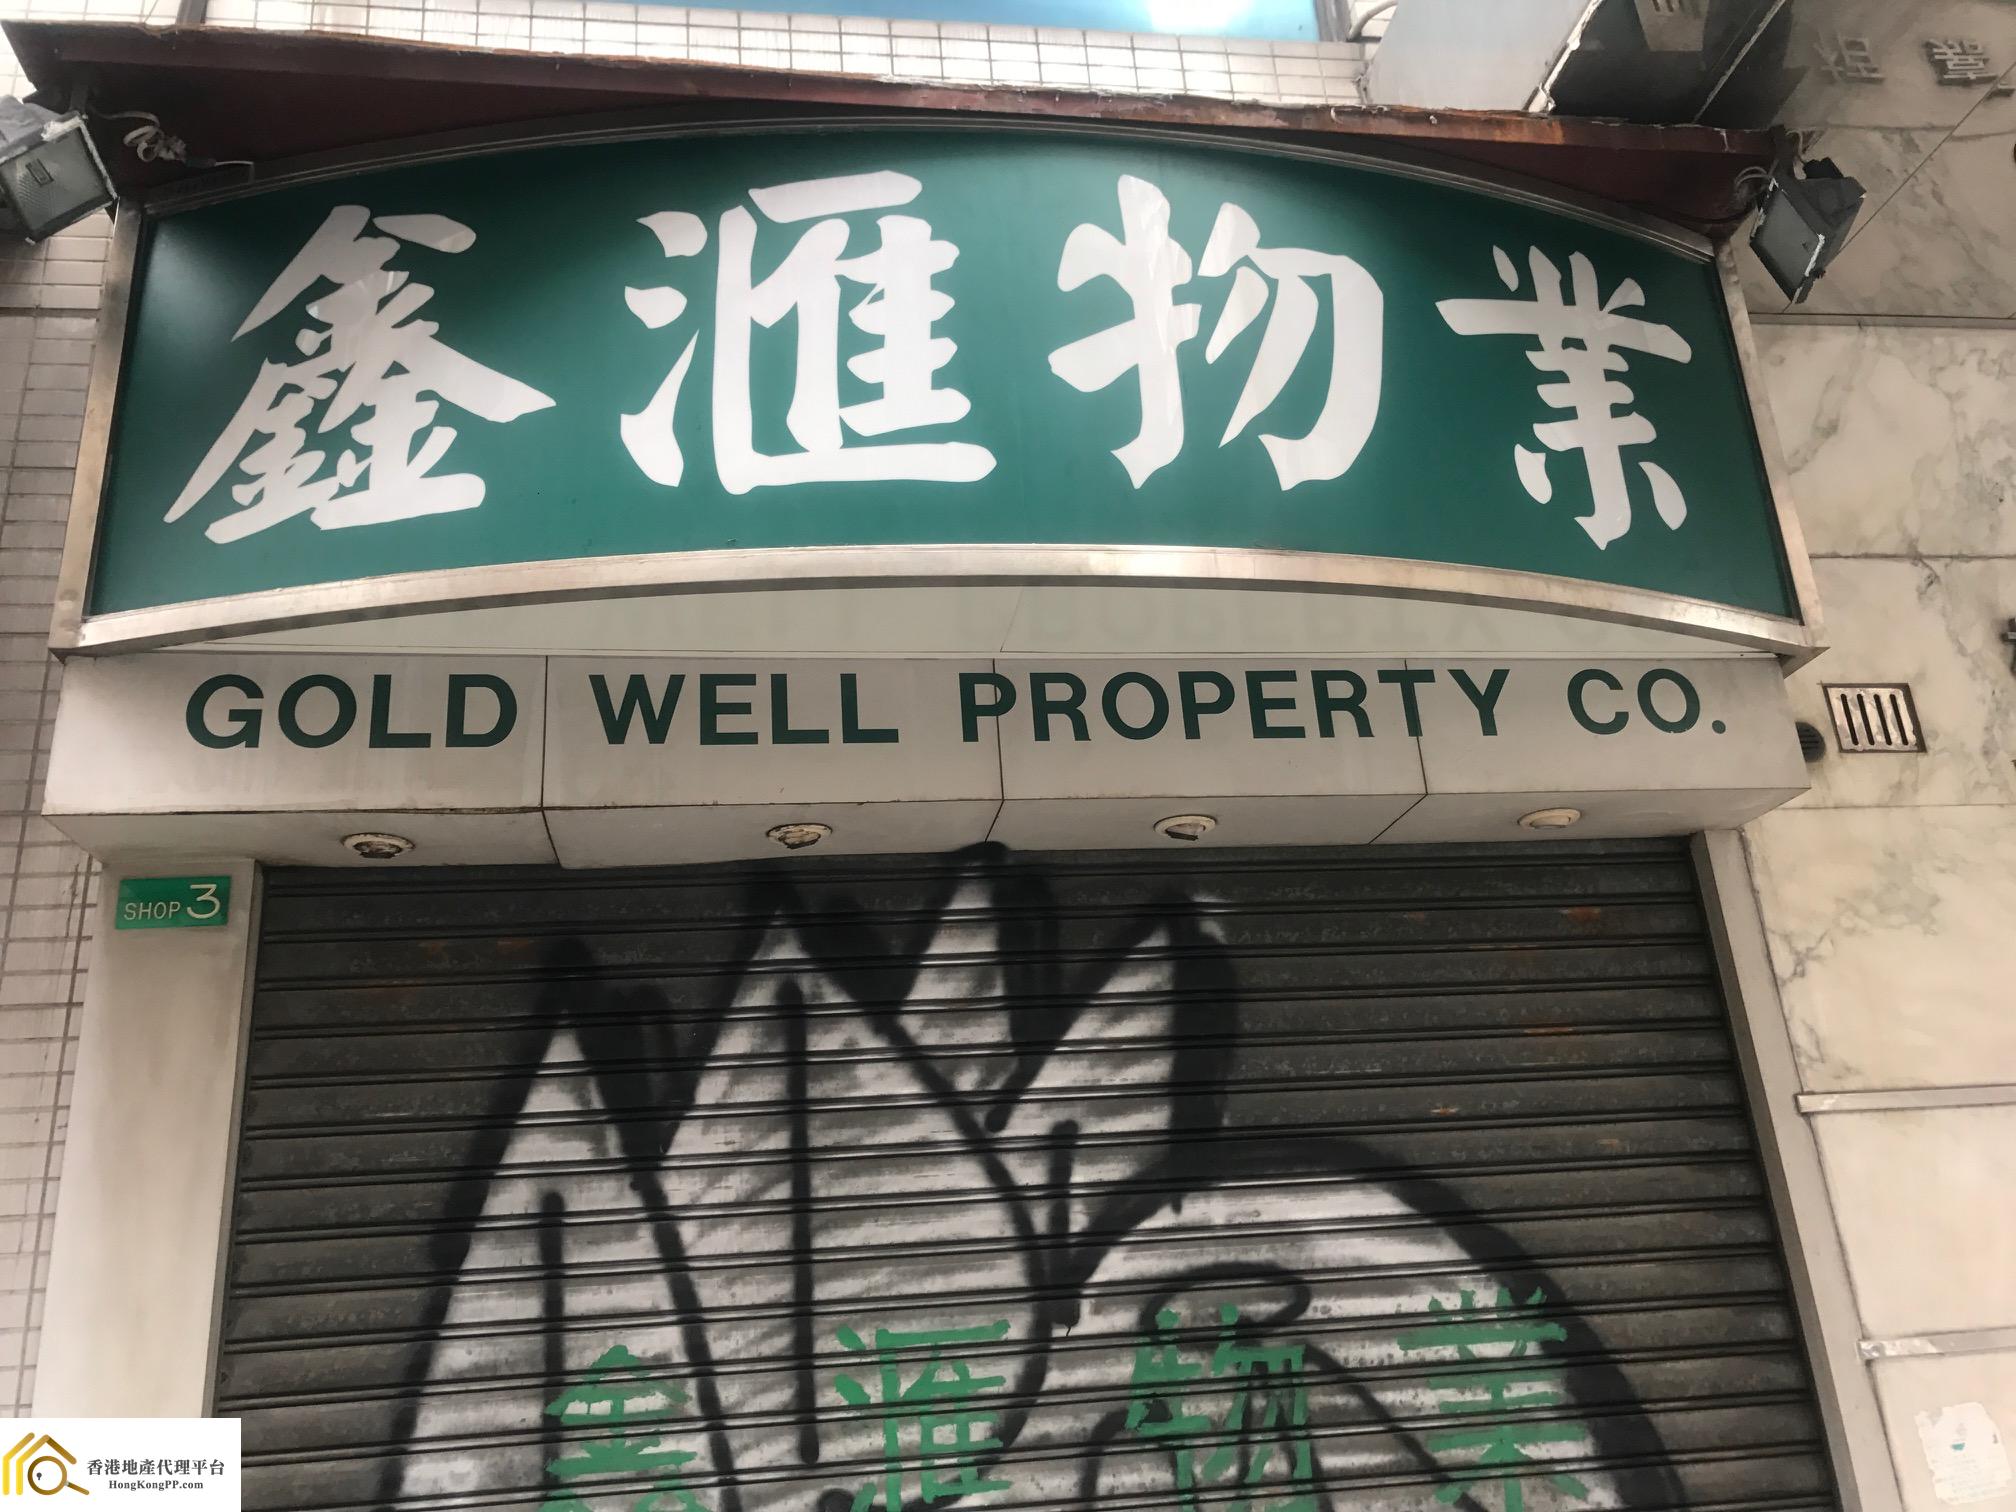 商舖地產代理: 鑫滙物業 Gold Well Property